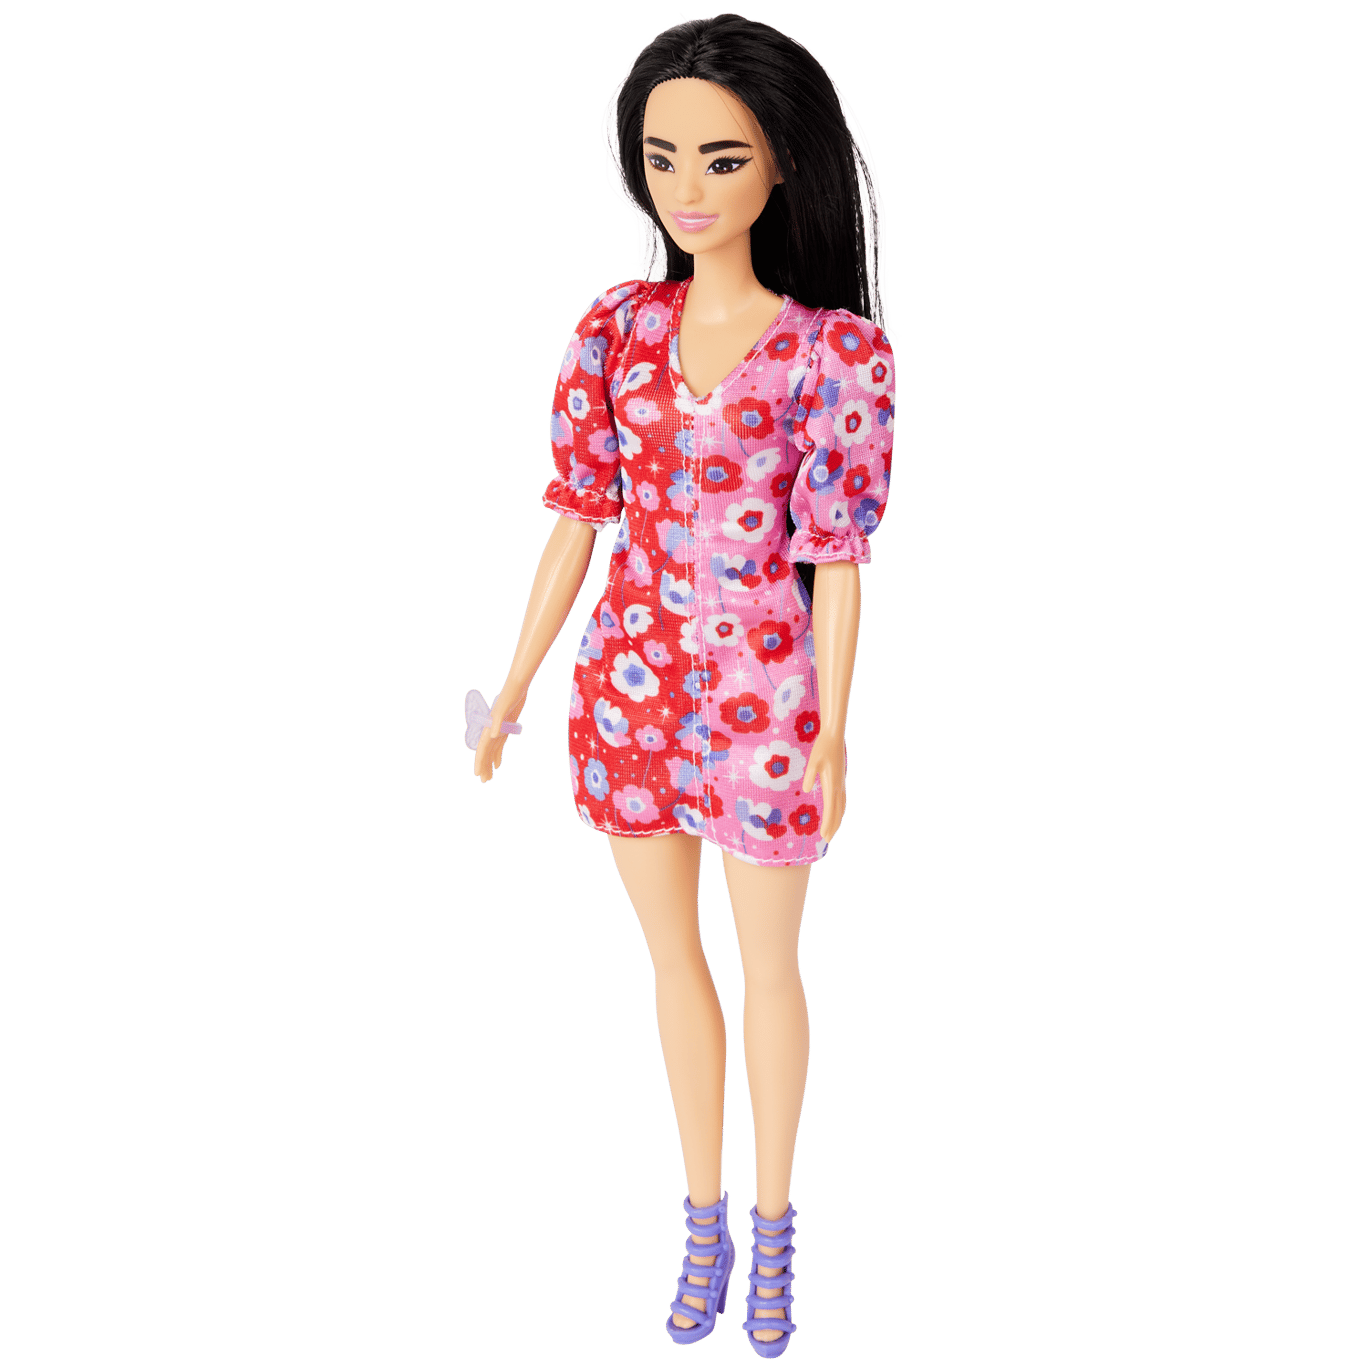 Geschiktheid wekelijks Consumeren Barbie Fashionista | Action.com